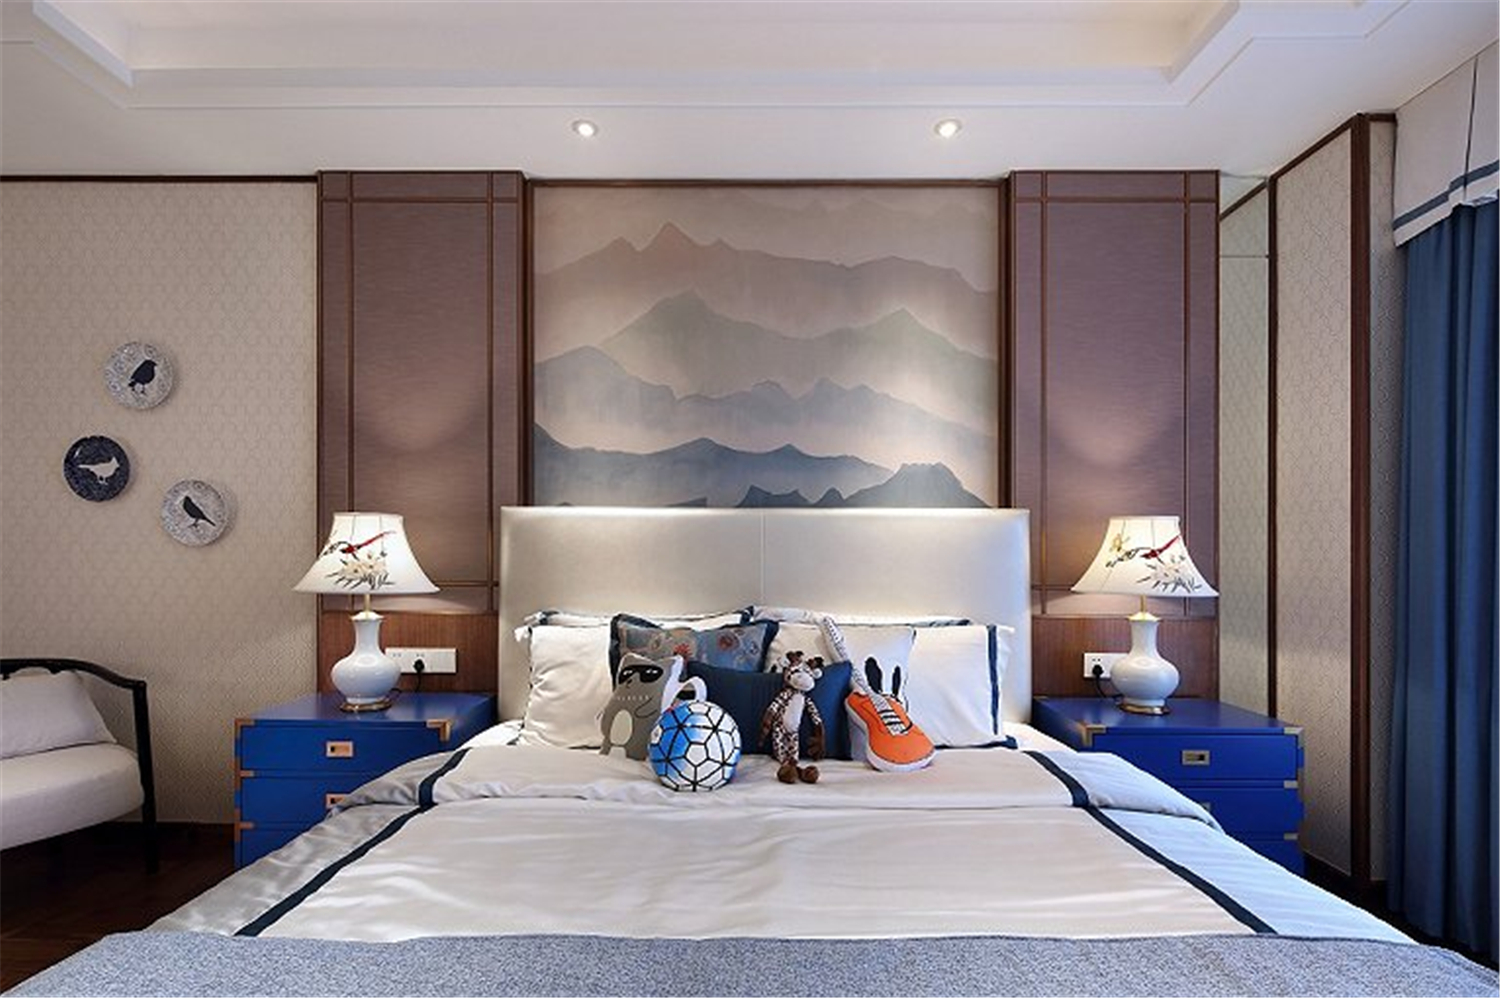 别墅装修 中式风格 腾龙设计 九间堂别墅 卧室图片来自孔继民在上海九间堂别墅中式风格设计的分享